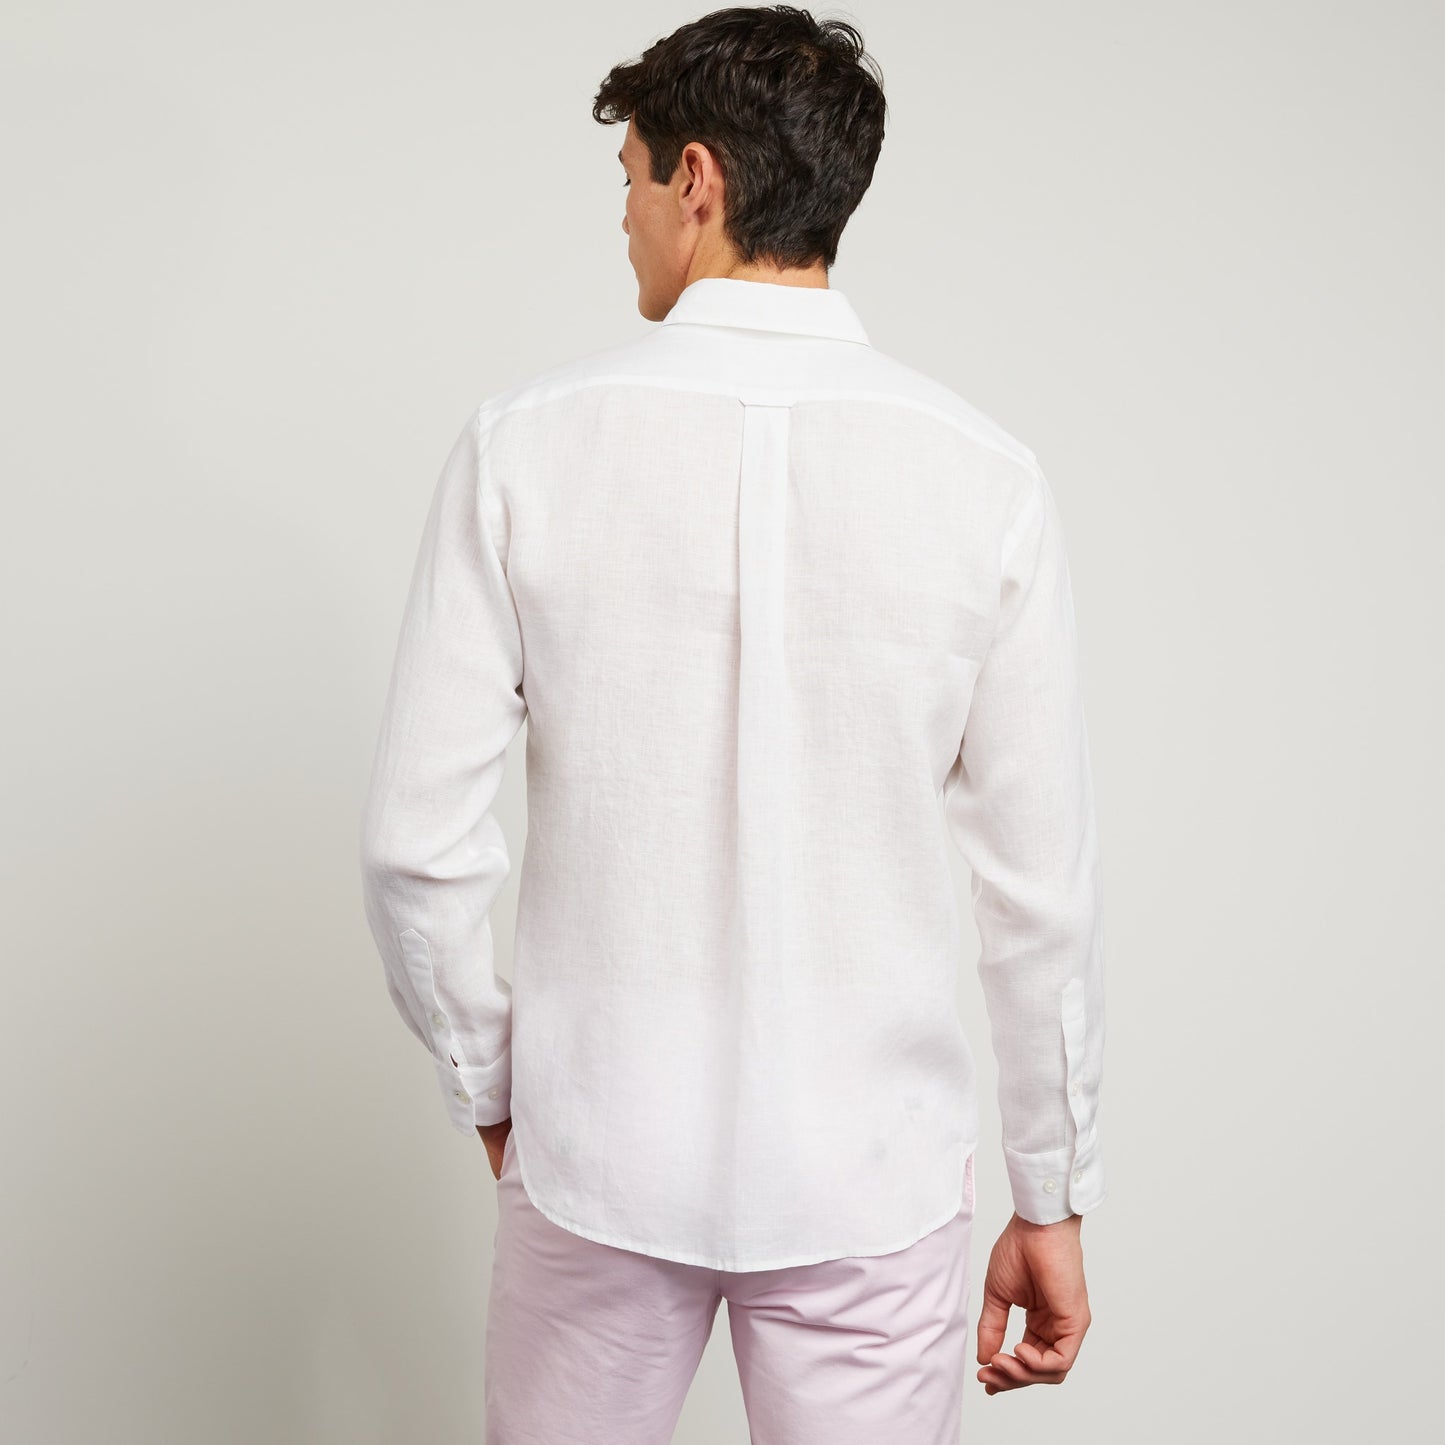 Eden Park White Linen Shirt